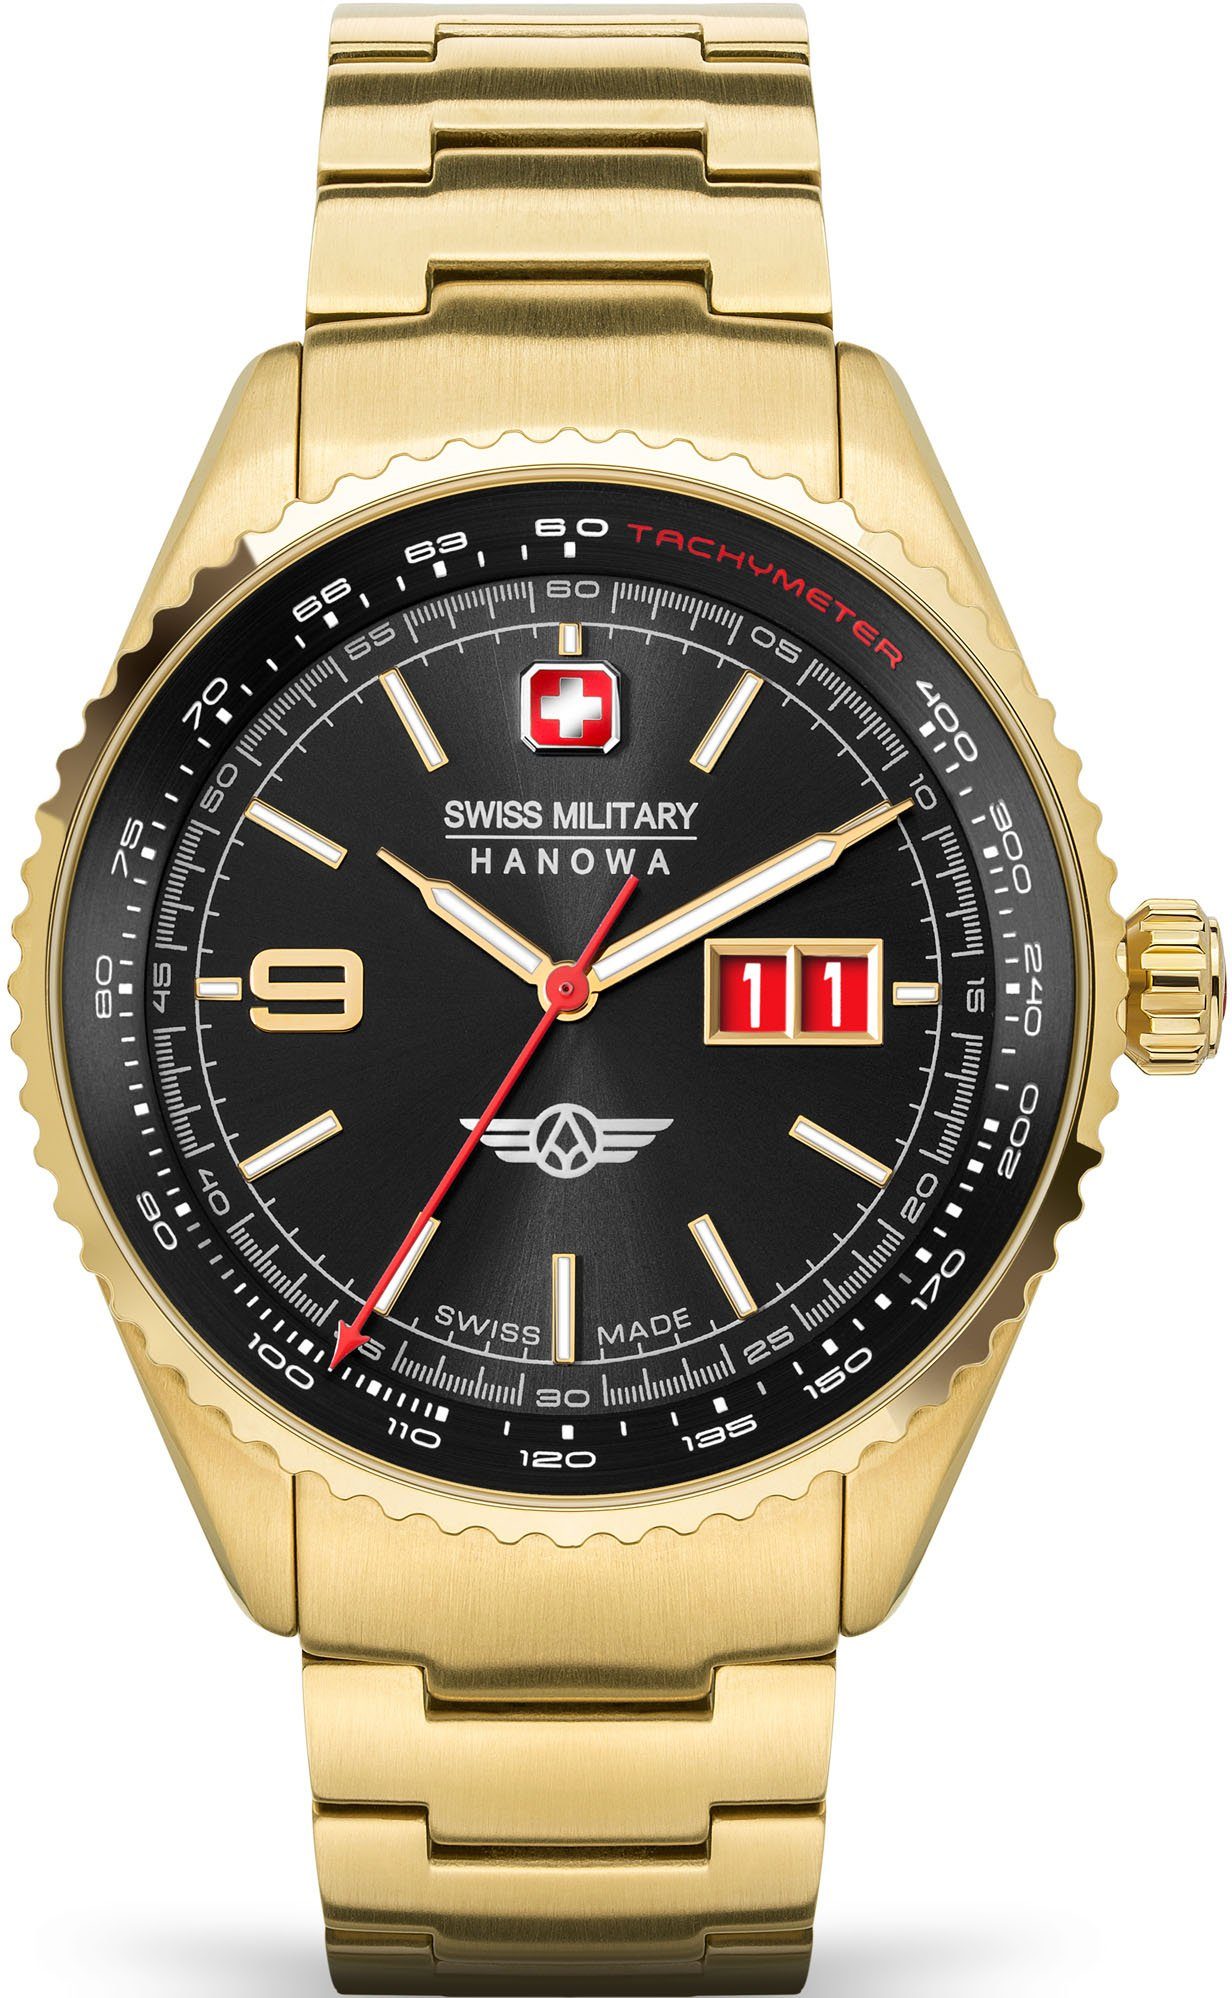 Swiss Military Hanowa Schweizer Uhr AFTERBURN, SMWGH2101010 gold, schwarz